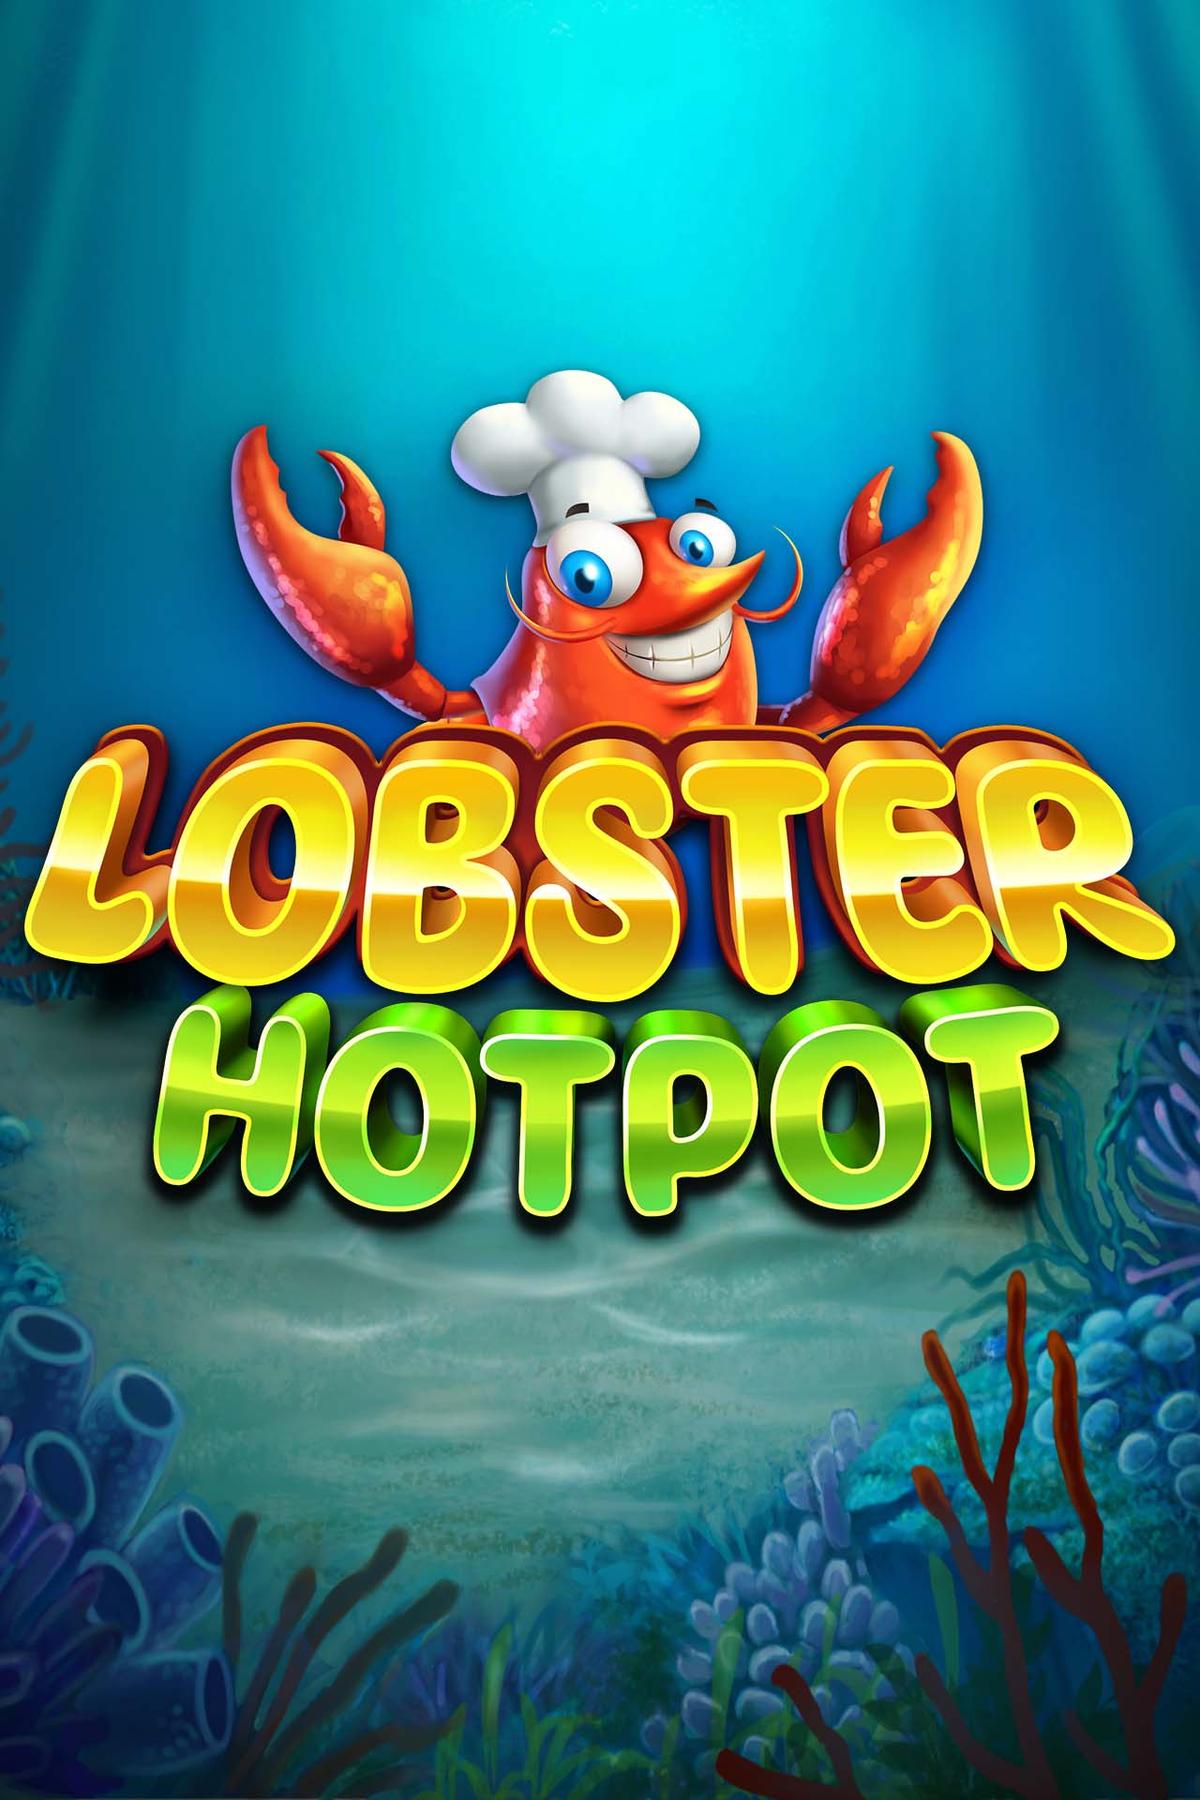 Lobster Hotpot